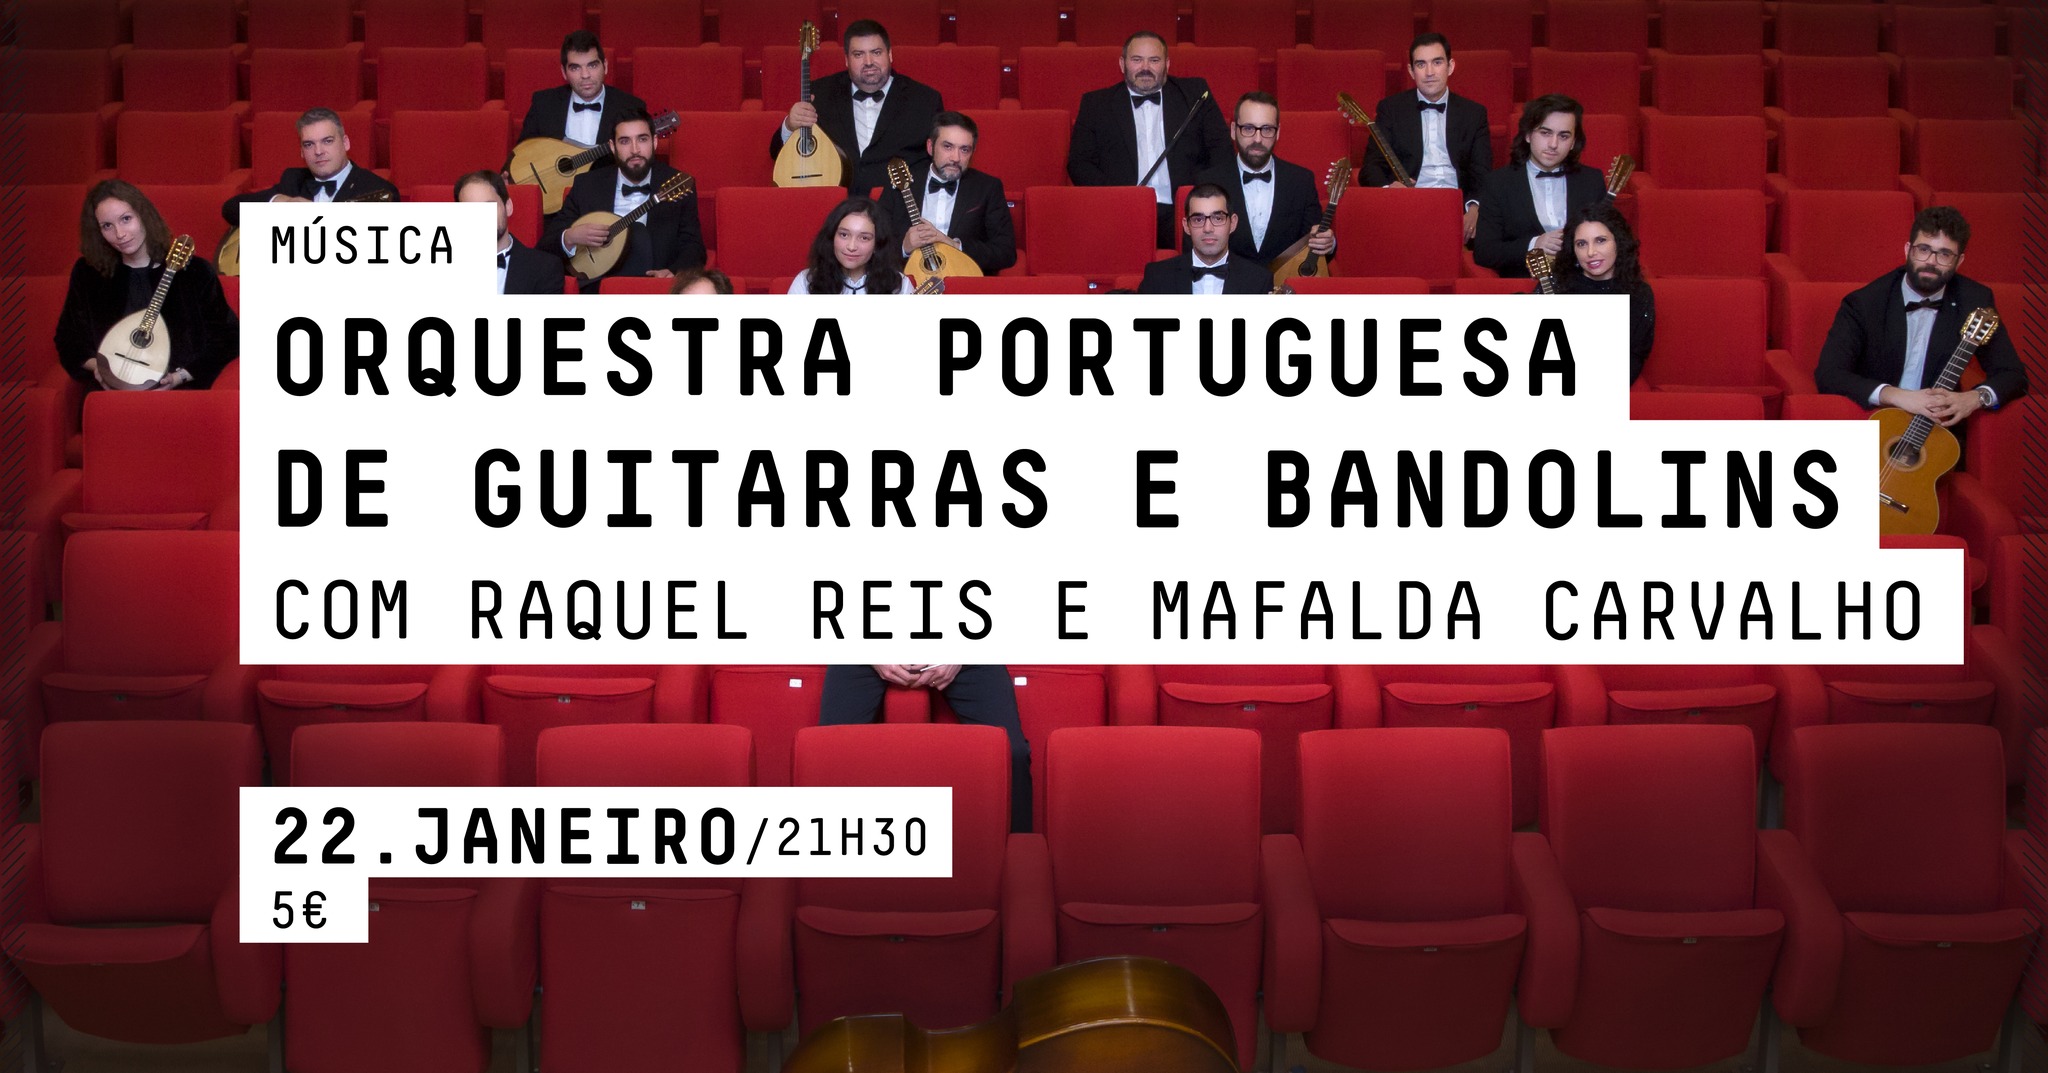 MÚSICA - ORQUESTRA PORTUGUESA DE GUITARRAS E BANDOLINS   COM RAQUEL REIS E MAFALDA CARVALHO